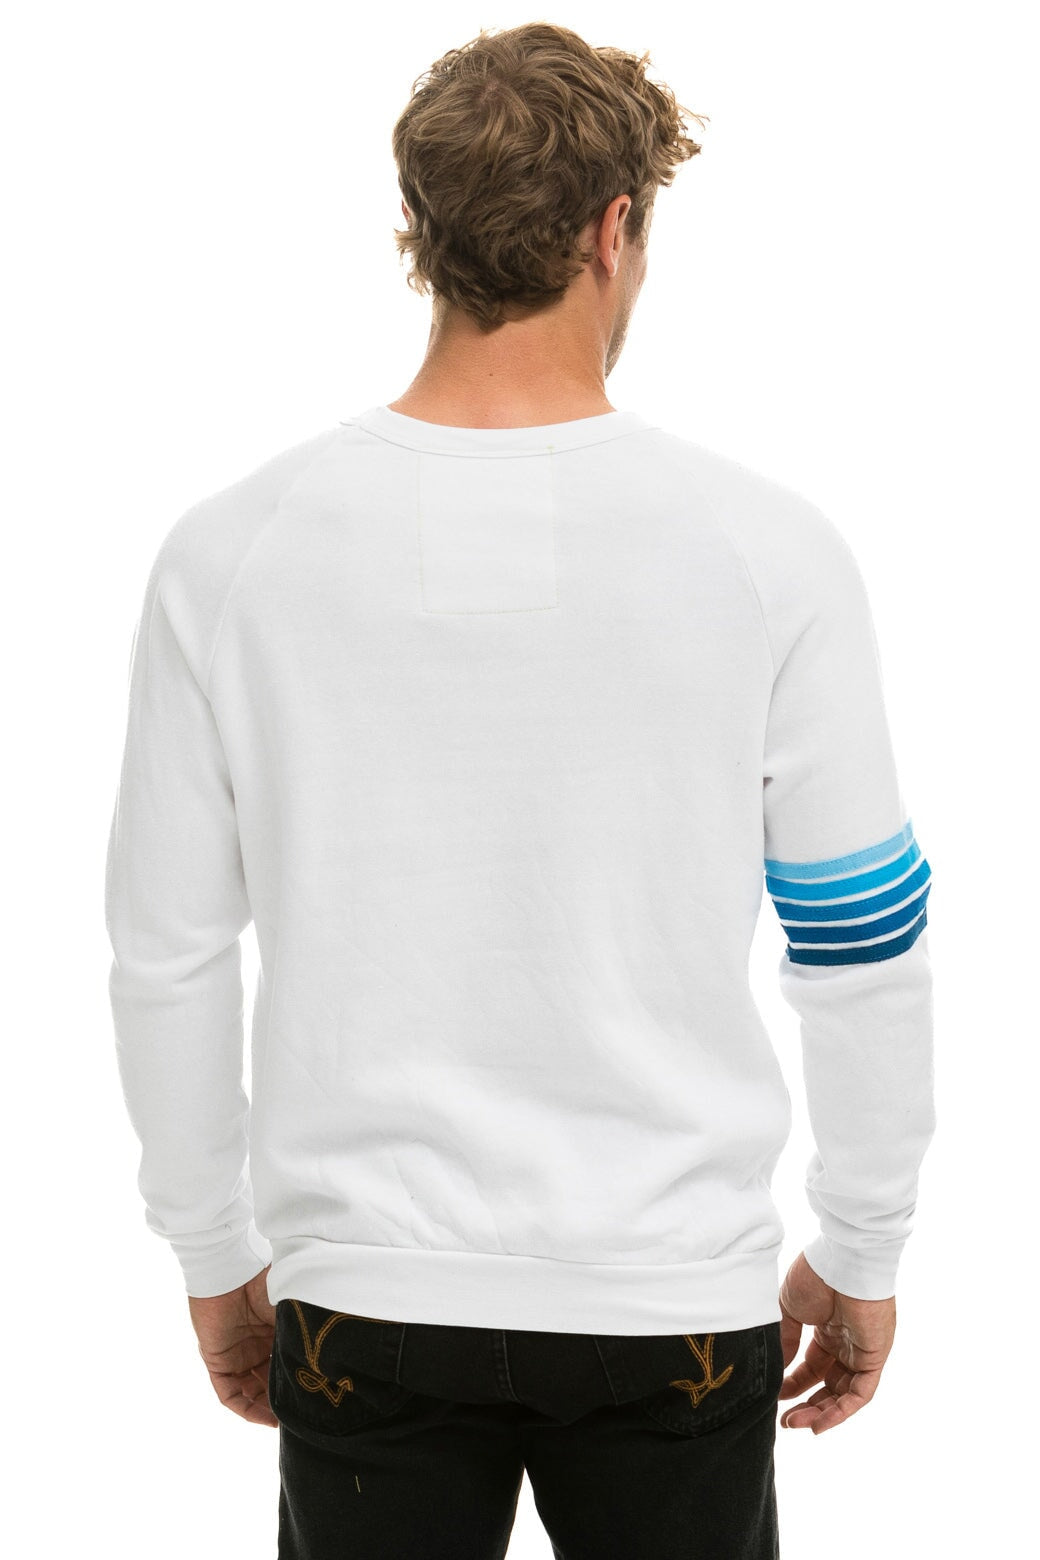 RUGBY STITCH SWEATSHIRT - WHITE // BLUE Sweatshirt Aviator Nation 